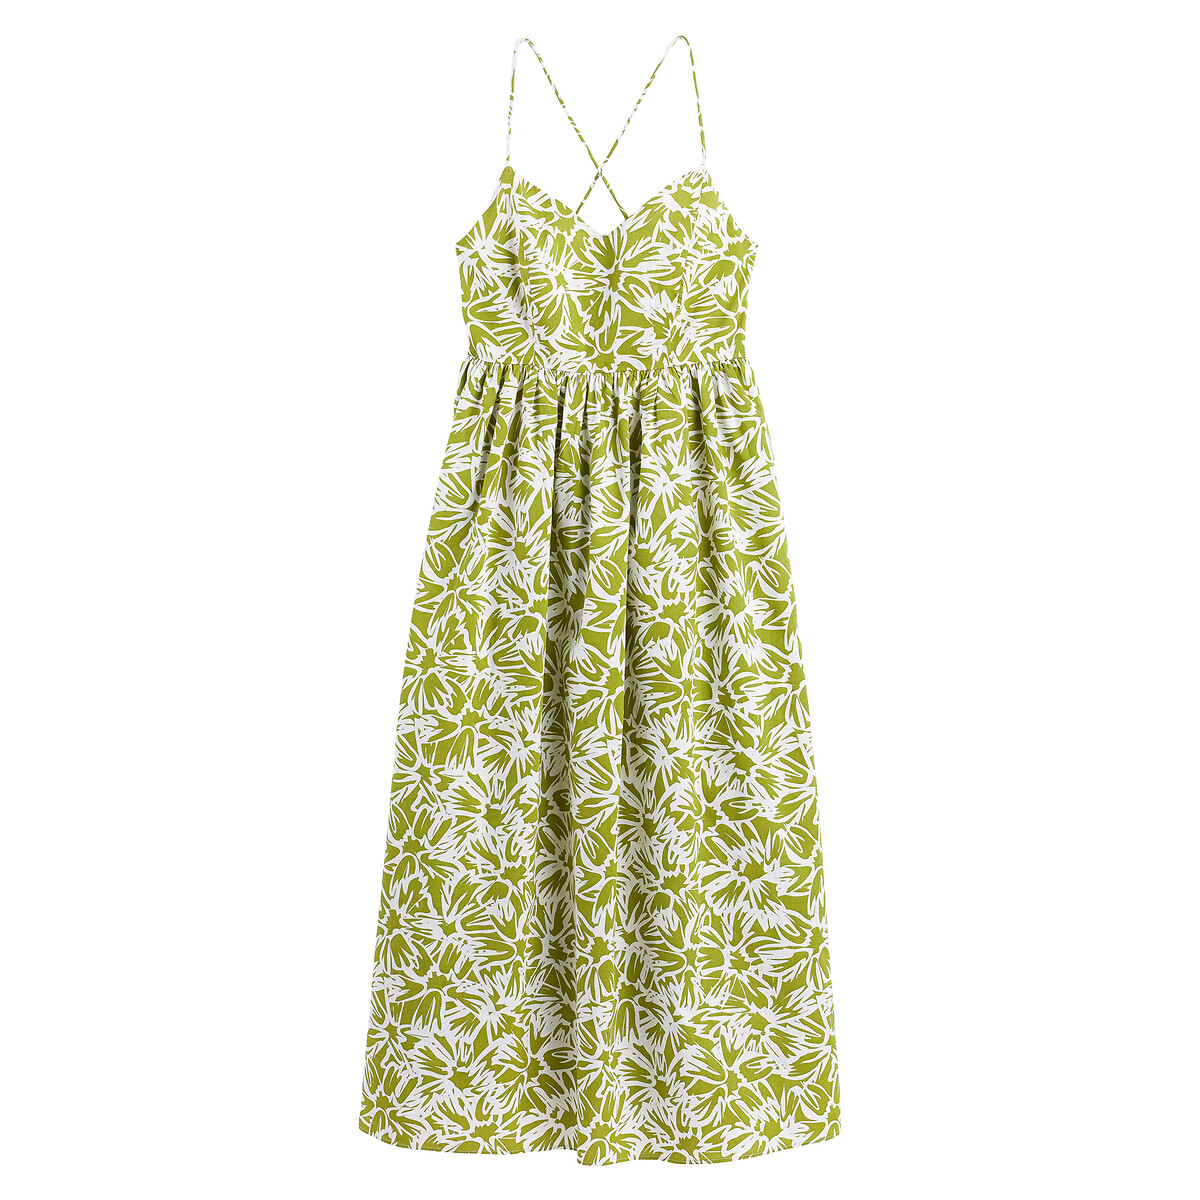 Платье-миди Тонкие бретели с принтом 52 зеленый LaRedoute, размер 52 - фото 5